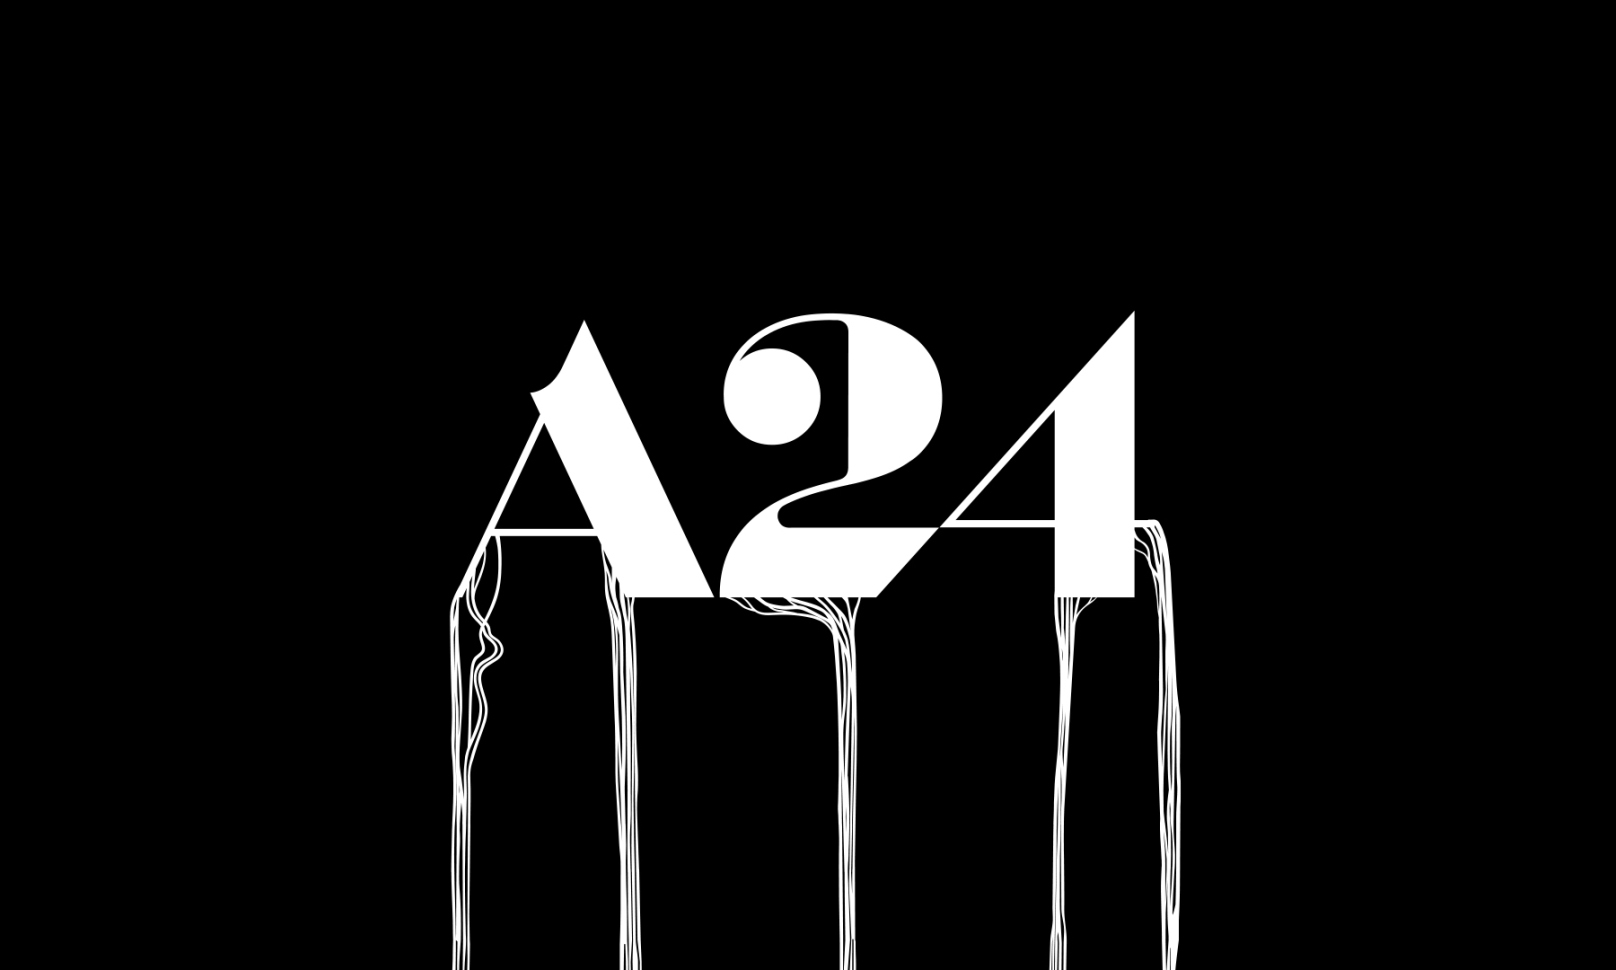 小岛工作室宣布将与 A24 合作改编《死亡搁浅》真人电影